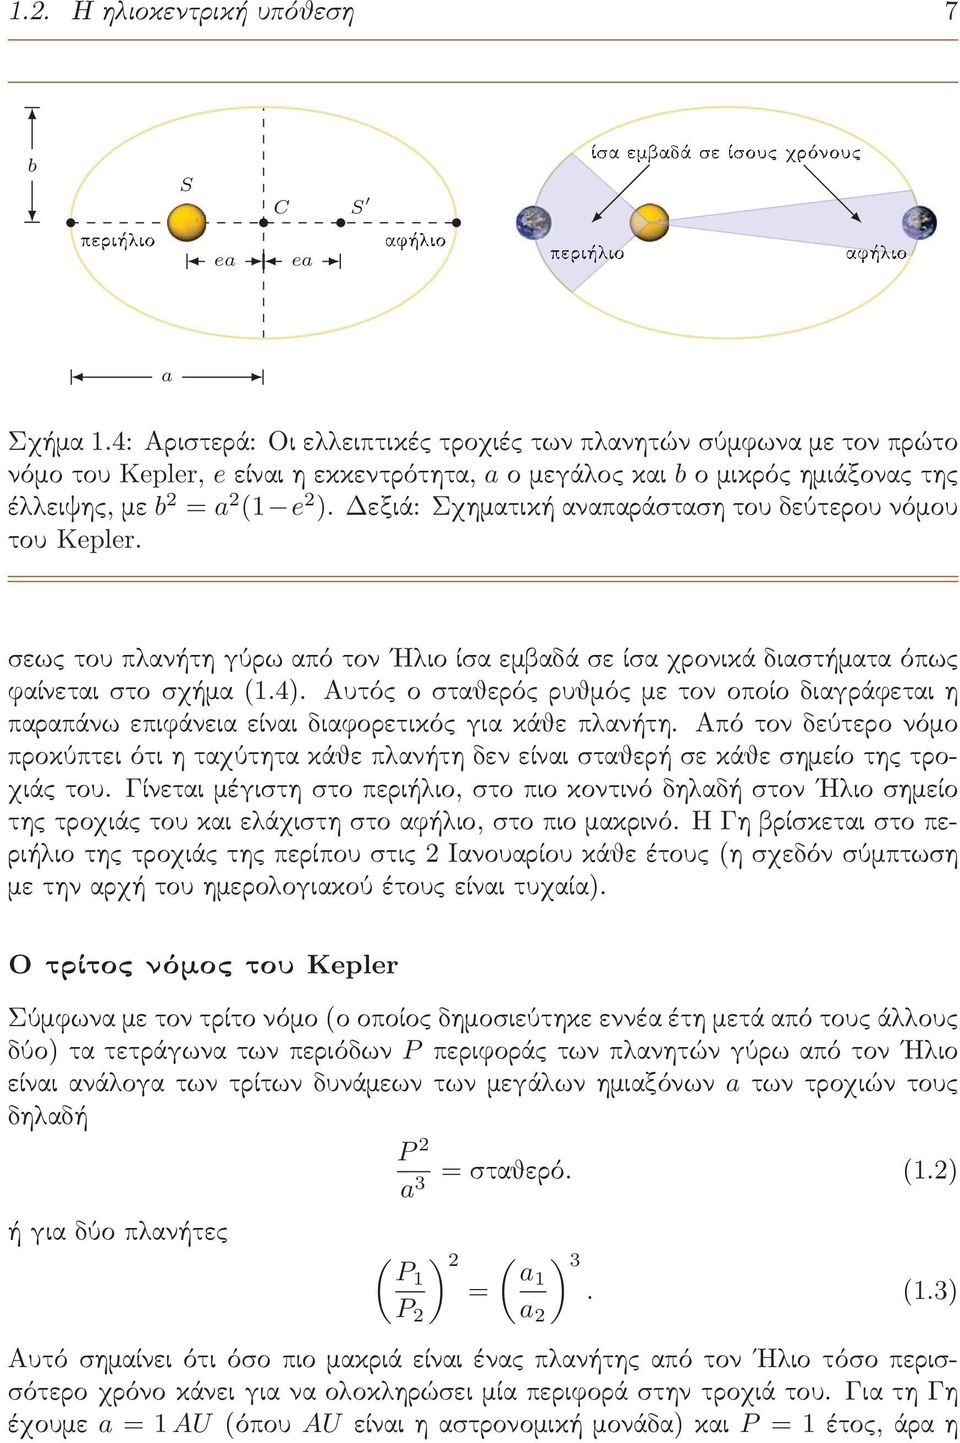 Δεξιά: Σχηματική αναπαράσταση του δεύτερου νόμου του Kepler. σεως του πλανήτη γύρω από τον Ηλιο ίσα εμβαδά σε ίσα χρονικά διαστήματα όπως φαίνεται στο σχήμα (1.4).